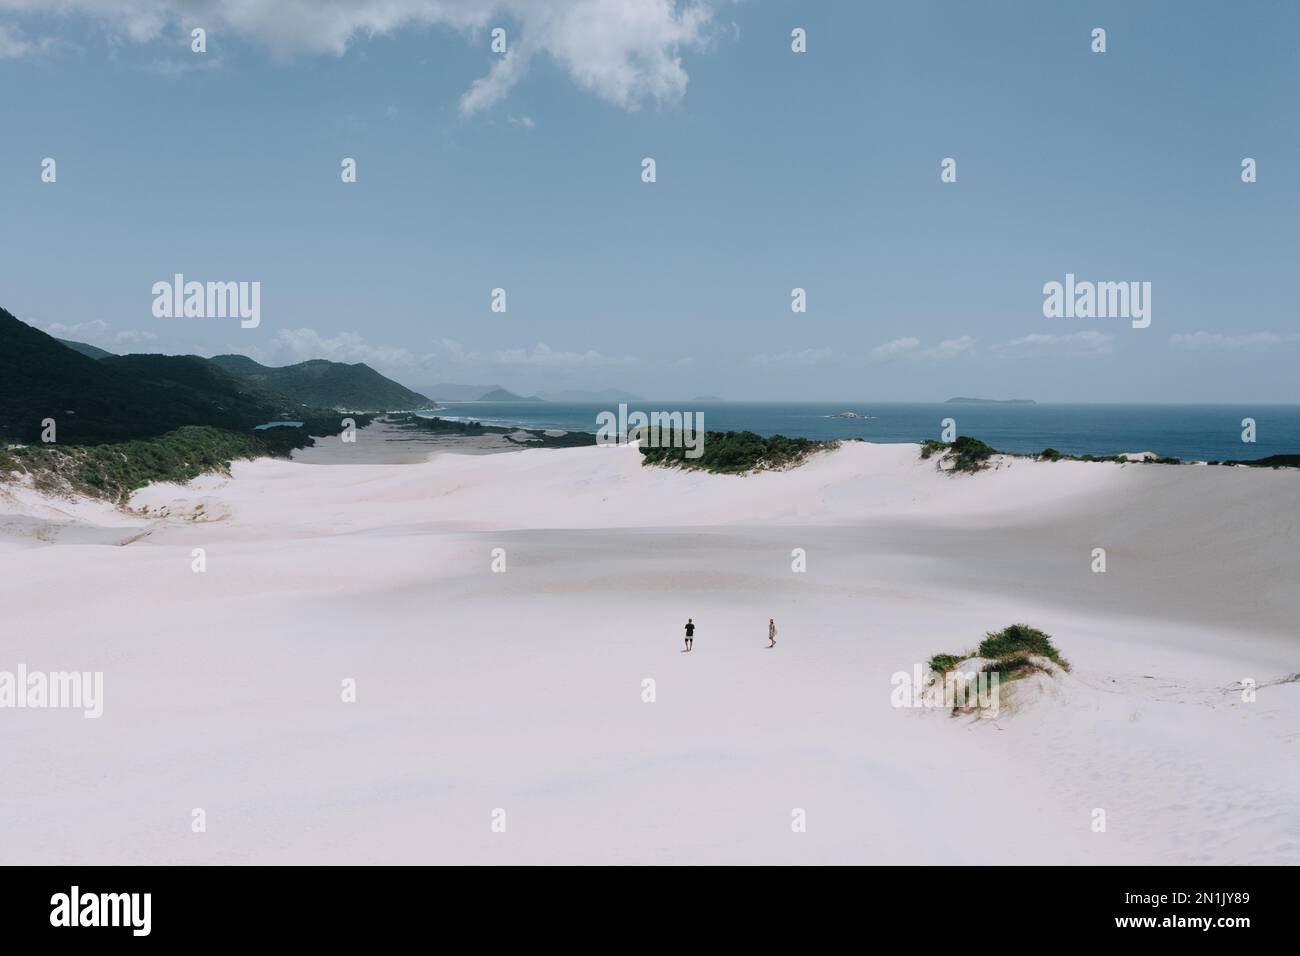 Die Dünen von Siriú. Dunas do Siriú Garapaba. Drohnenaufnahme von Dünen aus Sand dirket am Meer. Sand und grüne Landschaft 6 Stock Photo